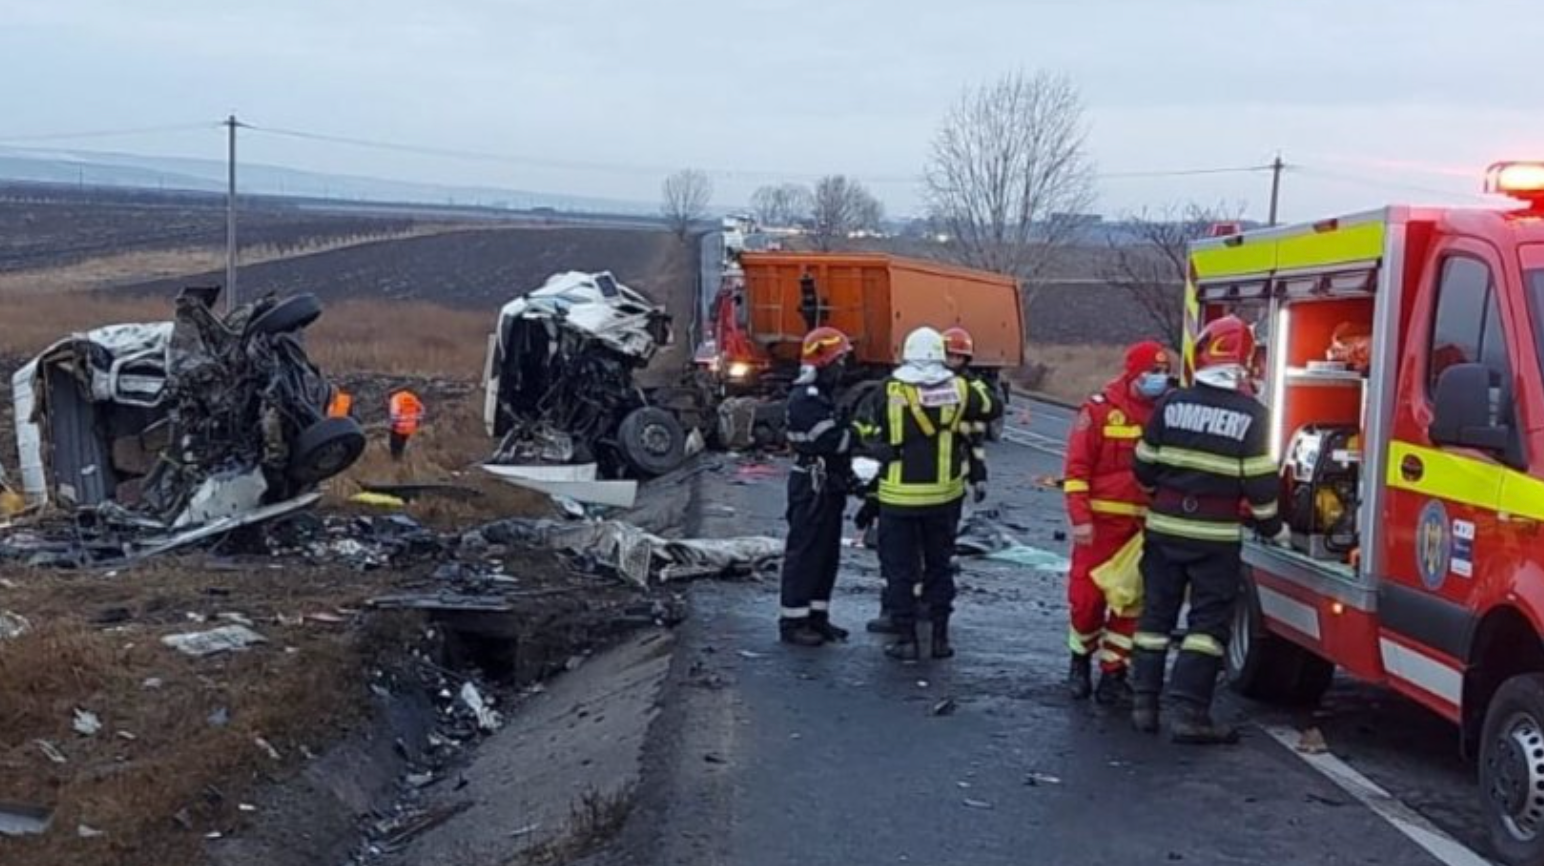 Sfârșitul lumii pe șoșele din România. 3 accidente grave într-o singură zi! Statul eșuat se milogește de șoferi